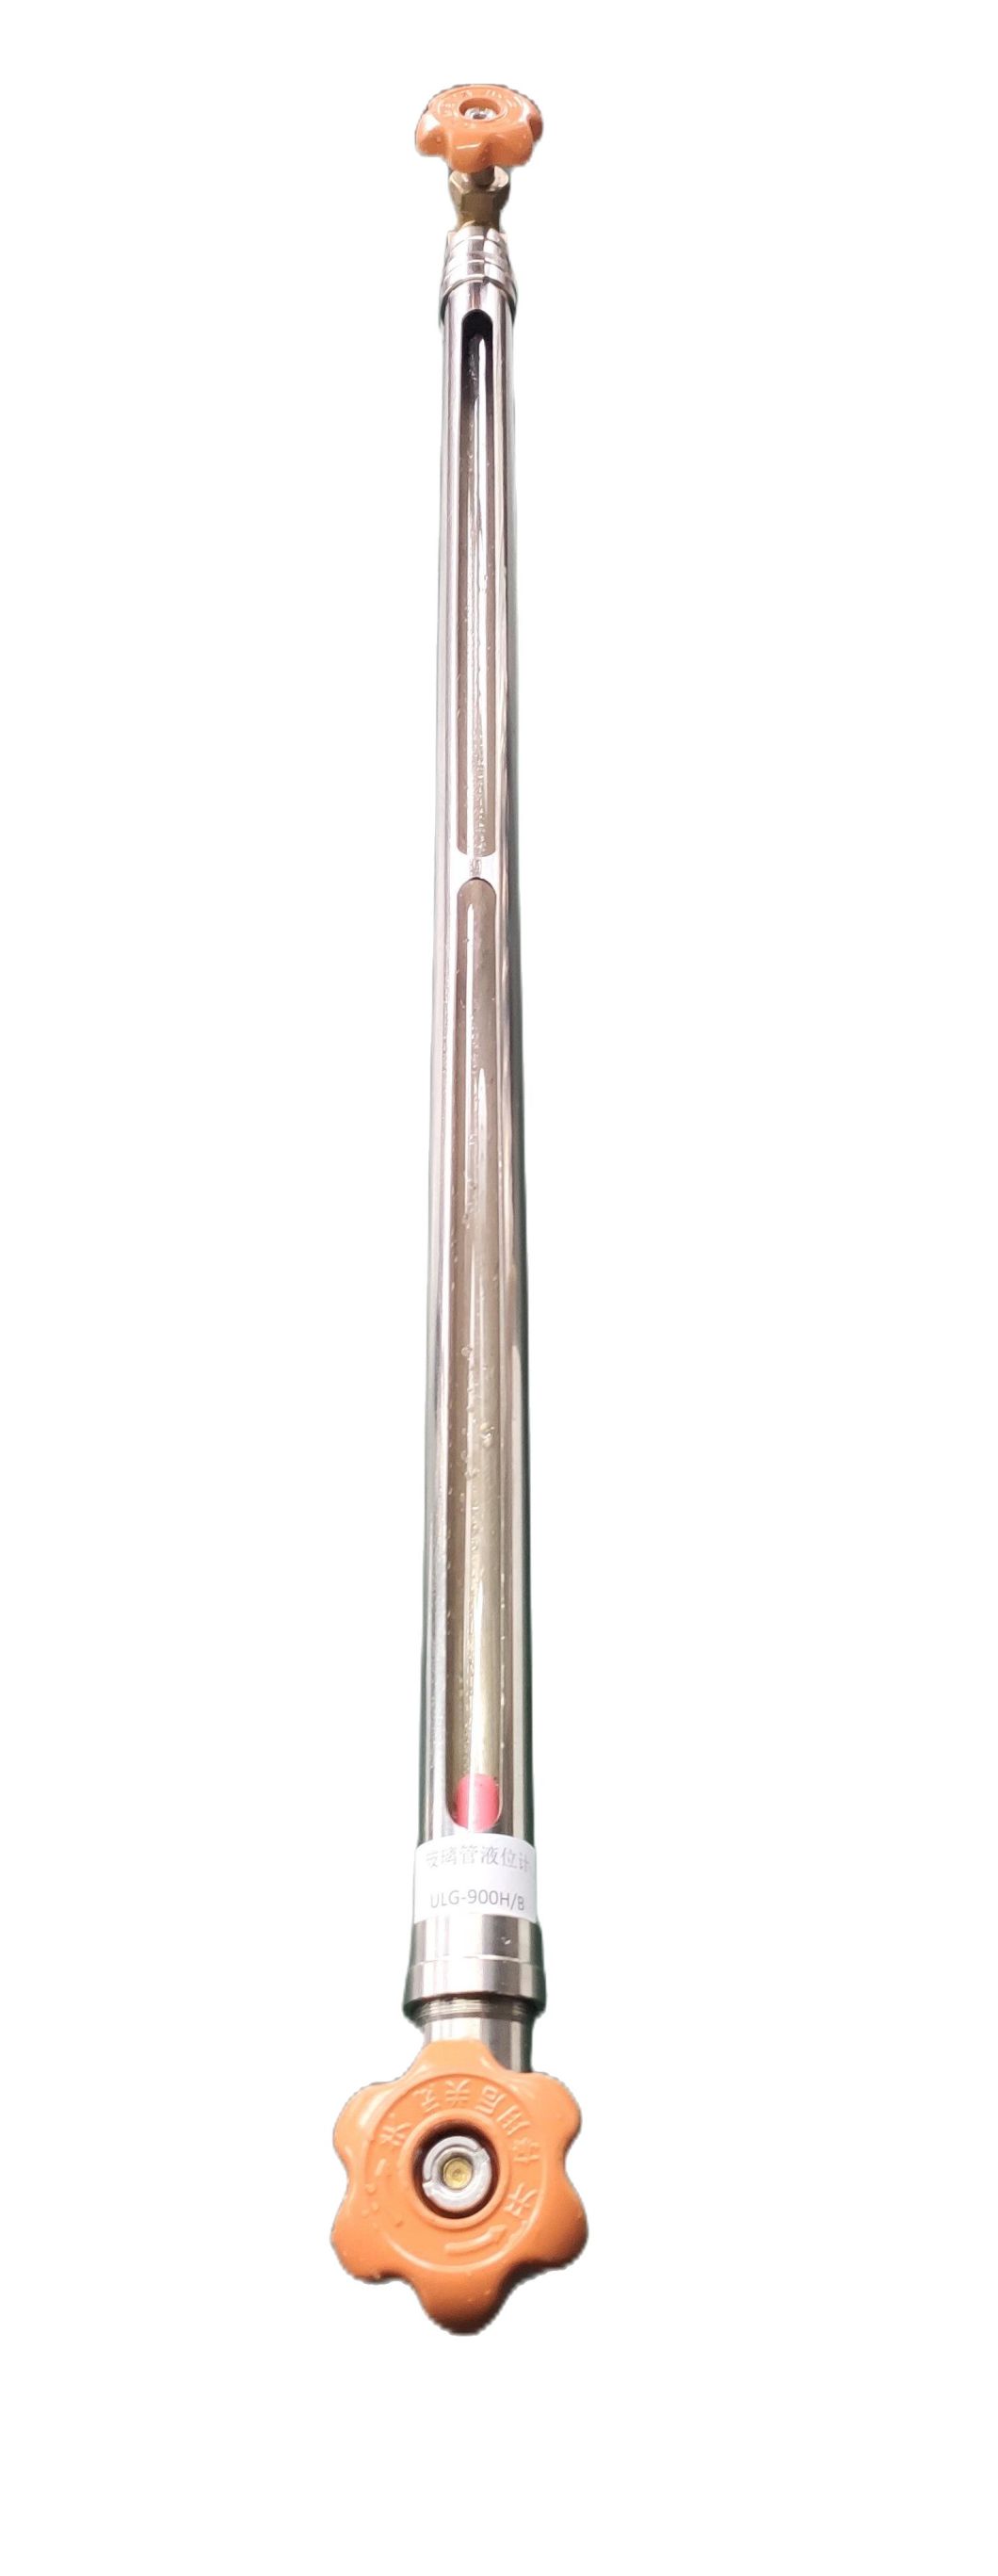 Ulg-01 Type Tubular Type Glass Level Gauge